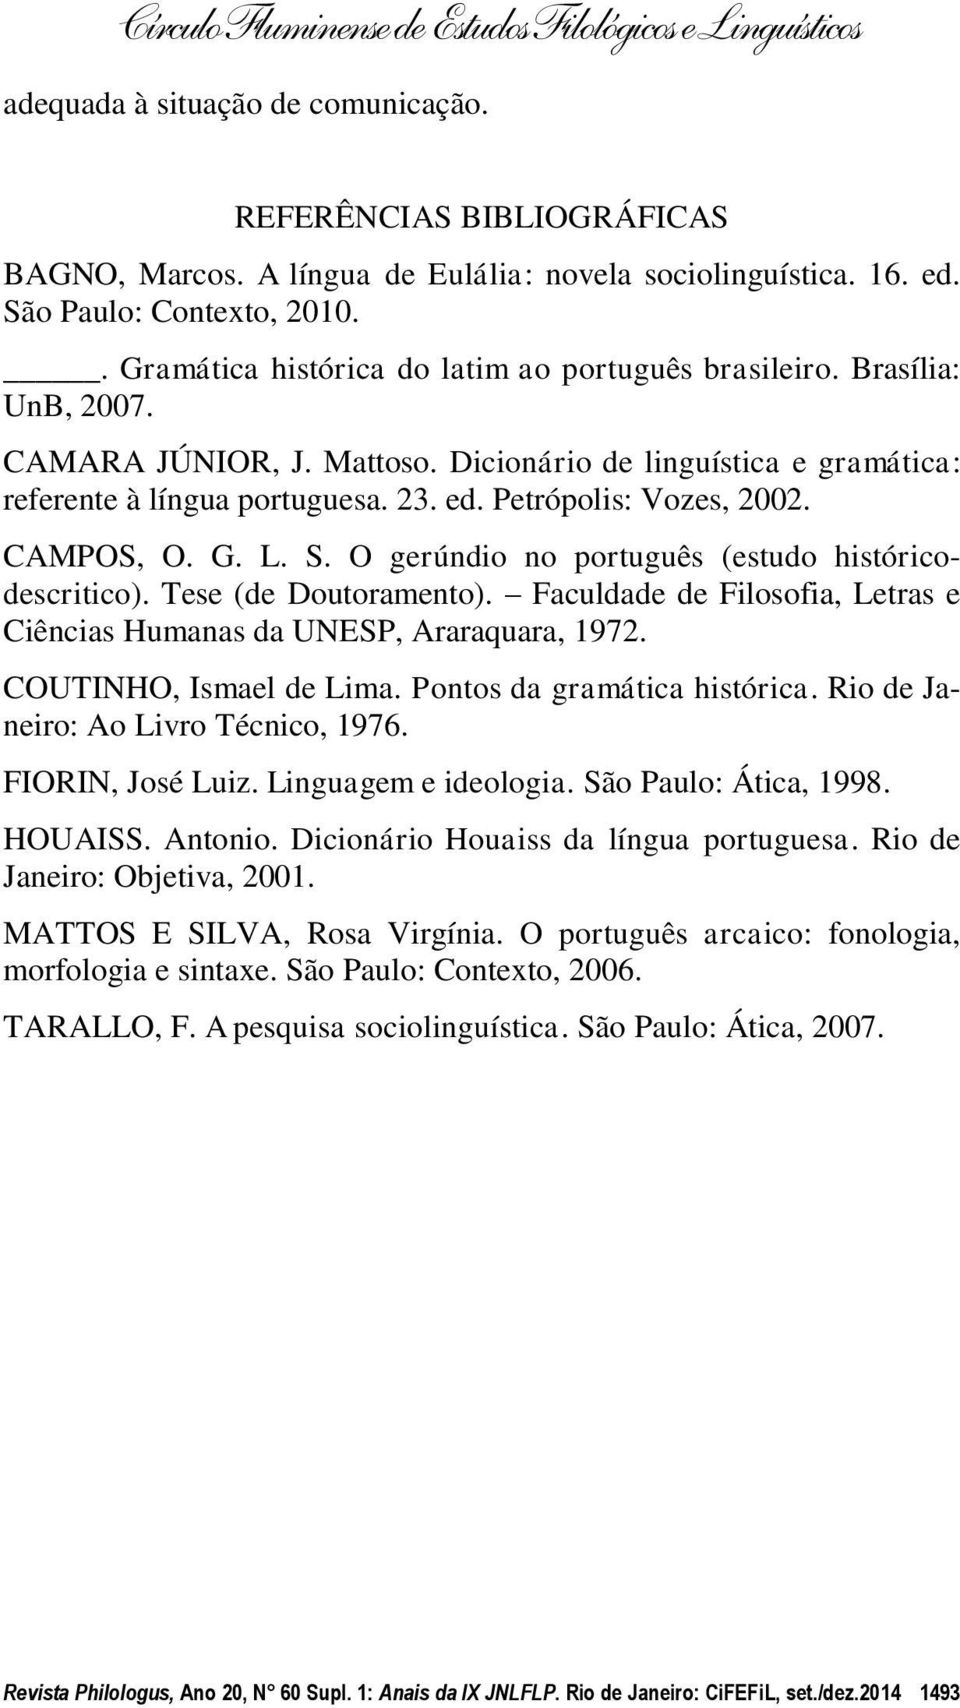 Petrópolis: Vozes, 2002. CAMPOS, O. G. L. S. O gerúndio no português (estudo históricodescritico). Tese (de Doutoramento). Faculdade de Filosofia, Letras e Ciências Humanas da UNESP, Araraquara, 1972.